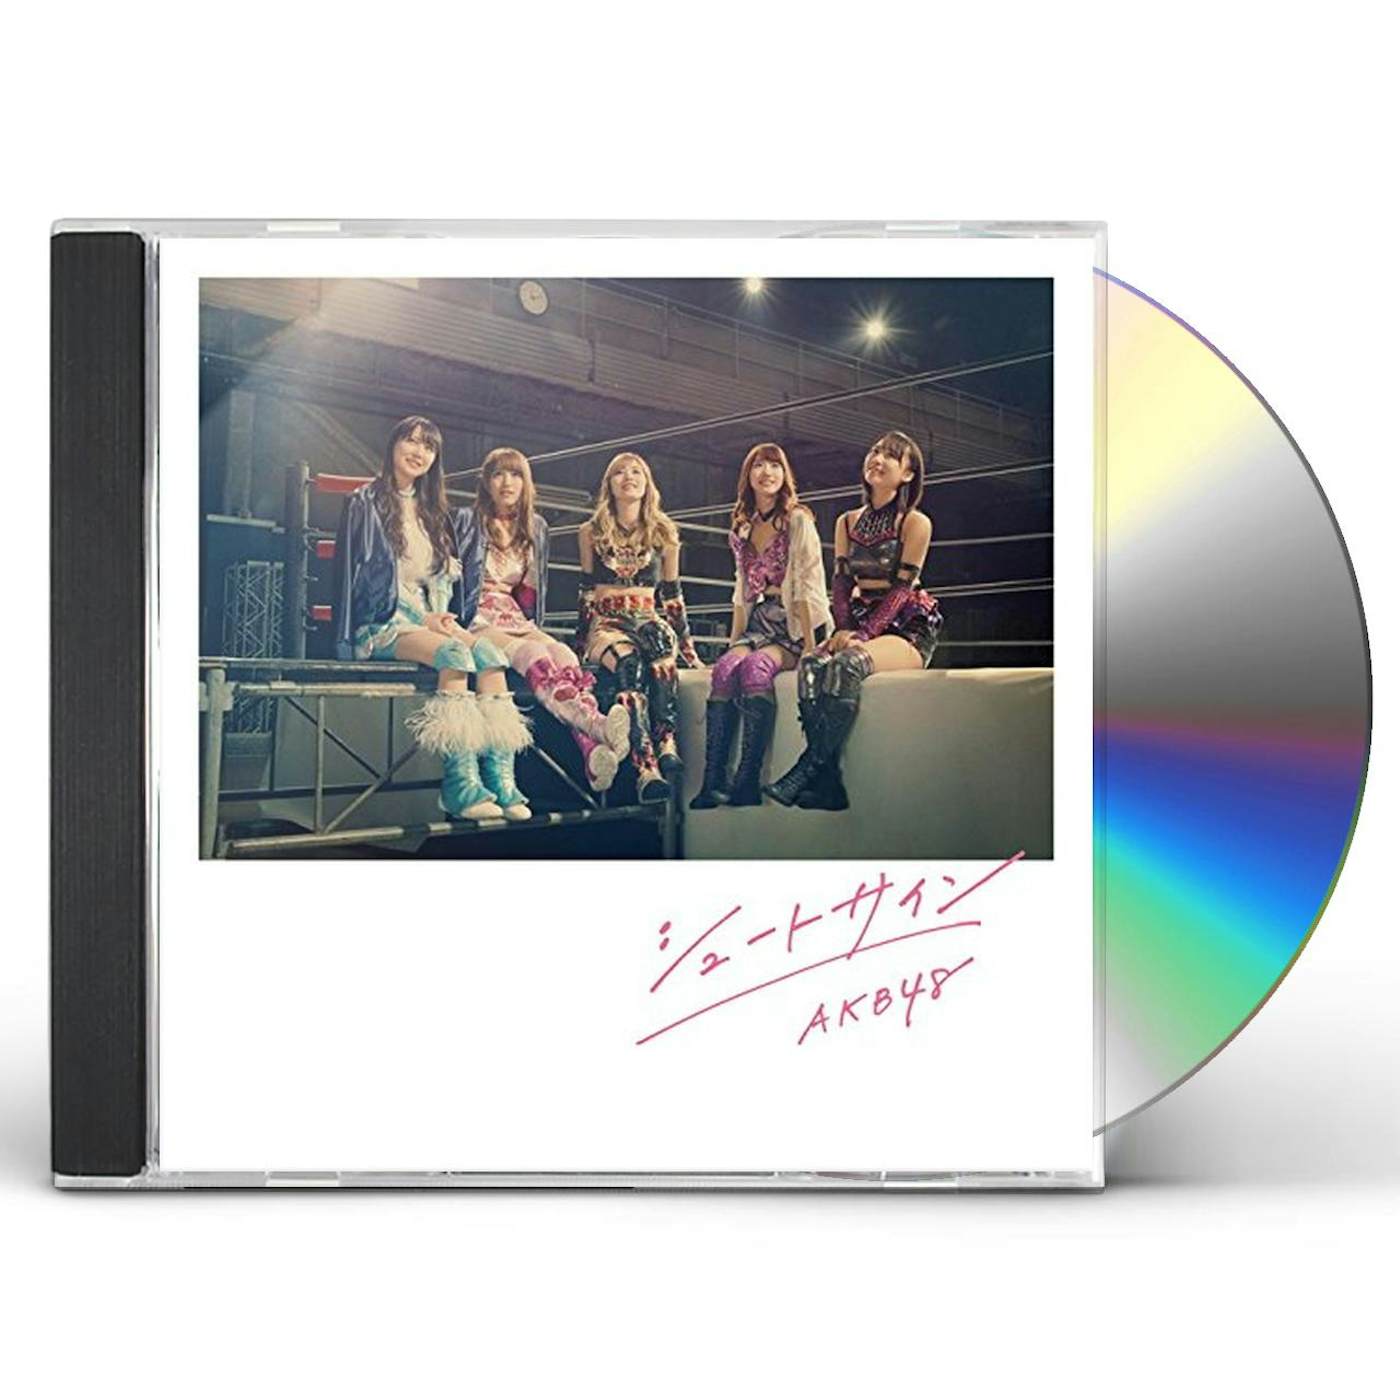 AKB48 SHOOT SIGN (TYPE-III) CD